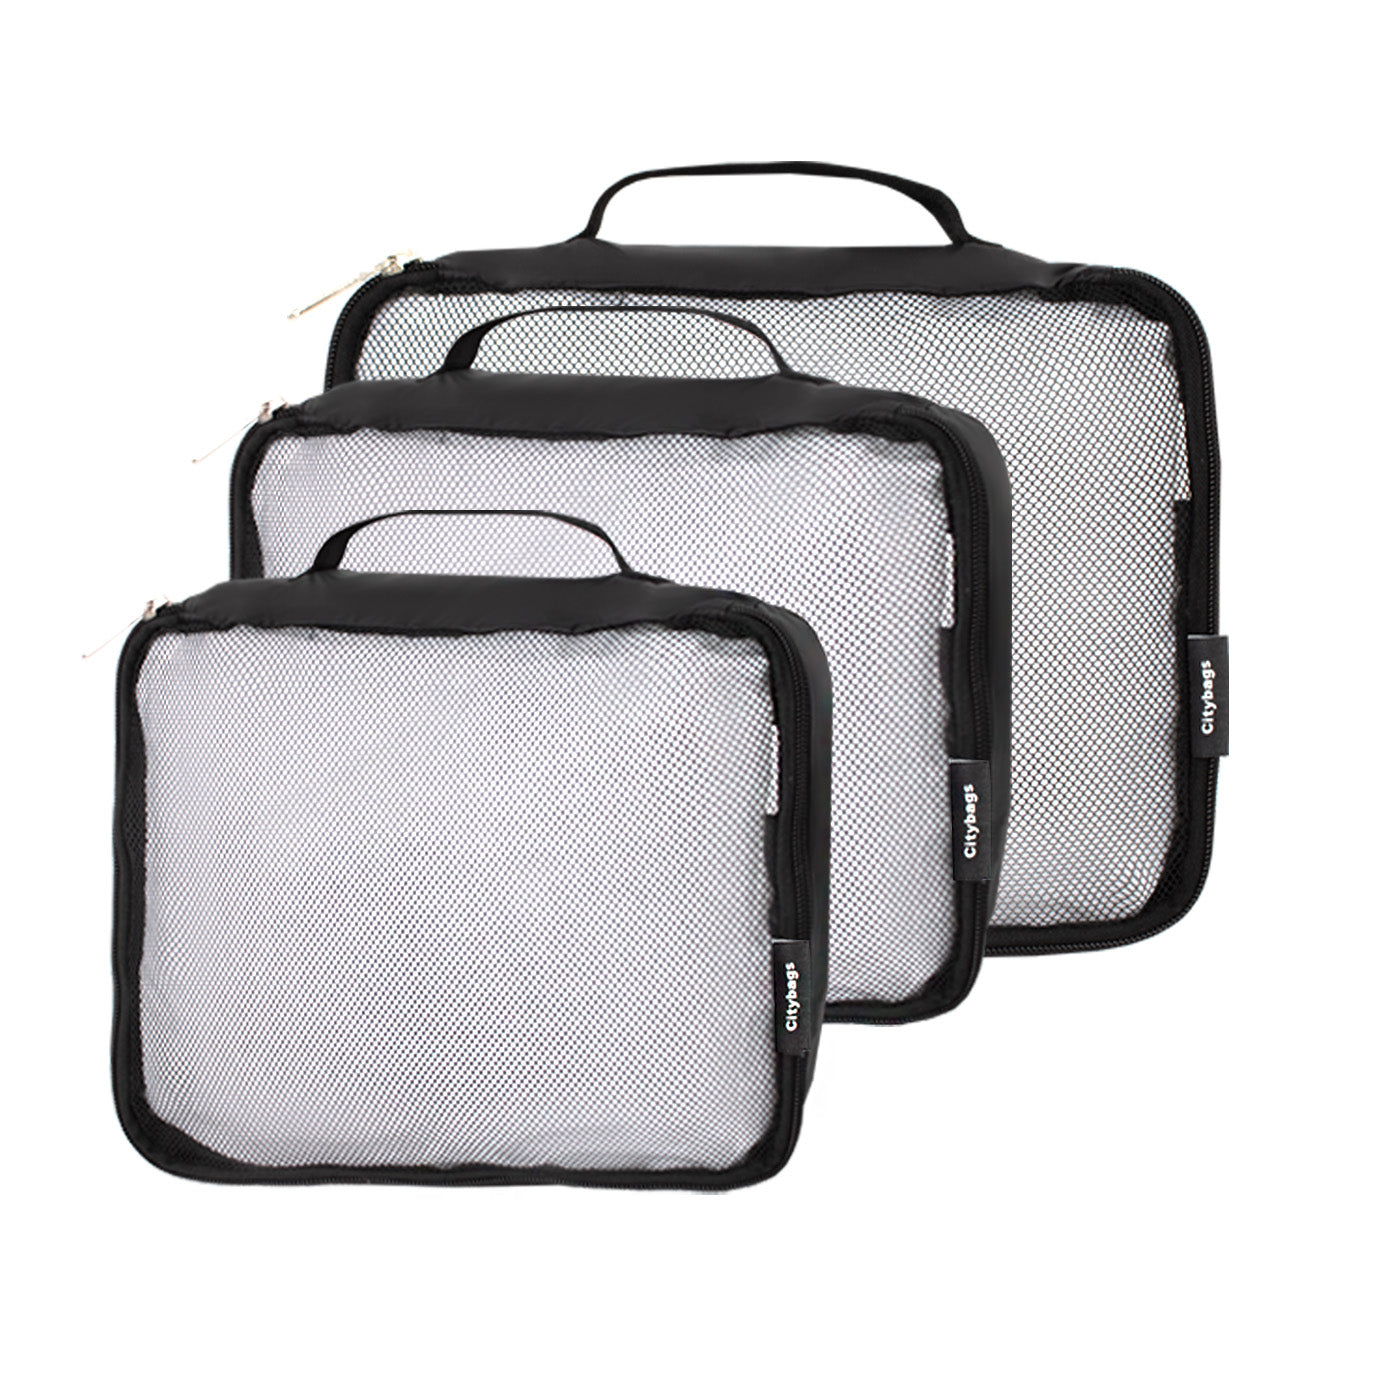 Juego de 7 cubos de equipaje para maletas, organizadores de bolsas de viaje  para equipaje de mano, juego de bolsas organizadoras de equipaje para